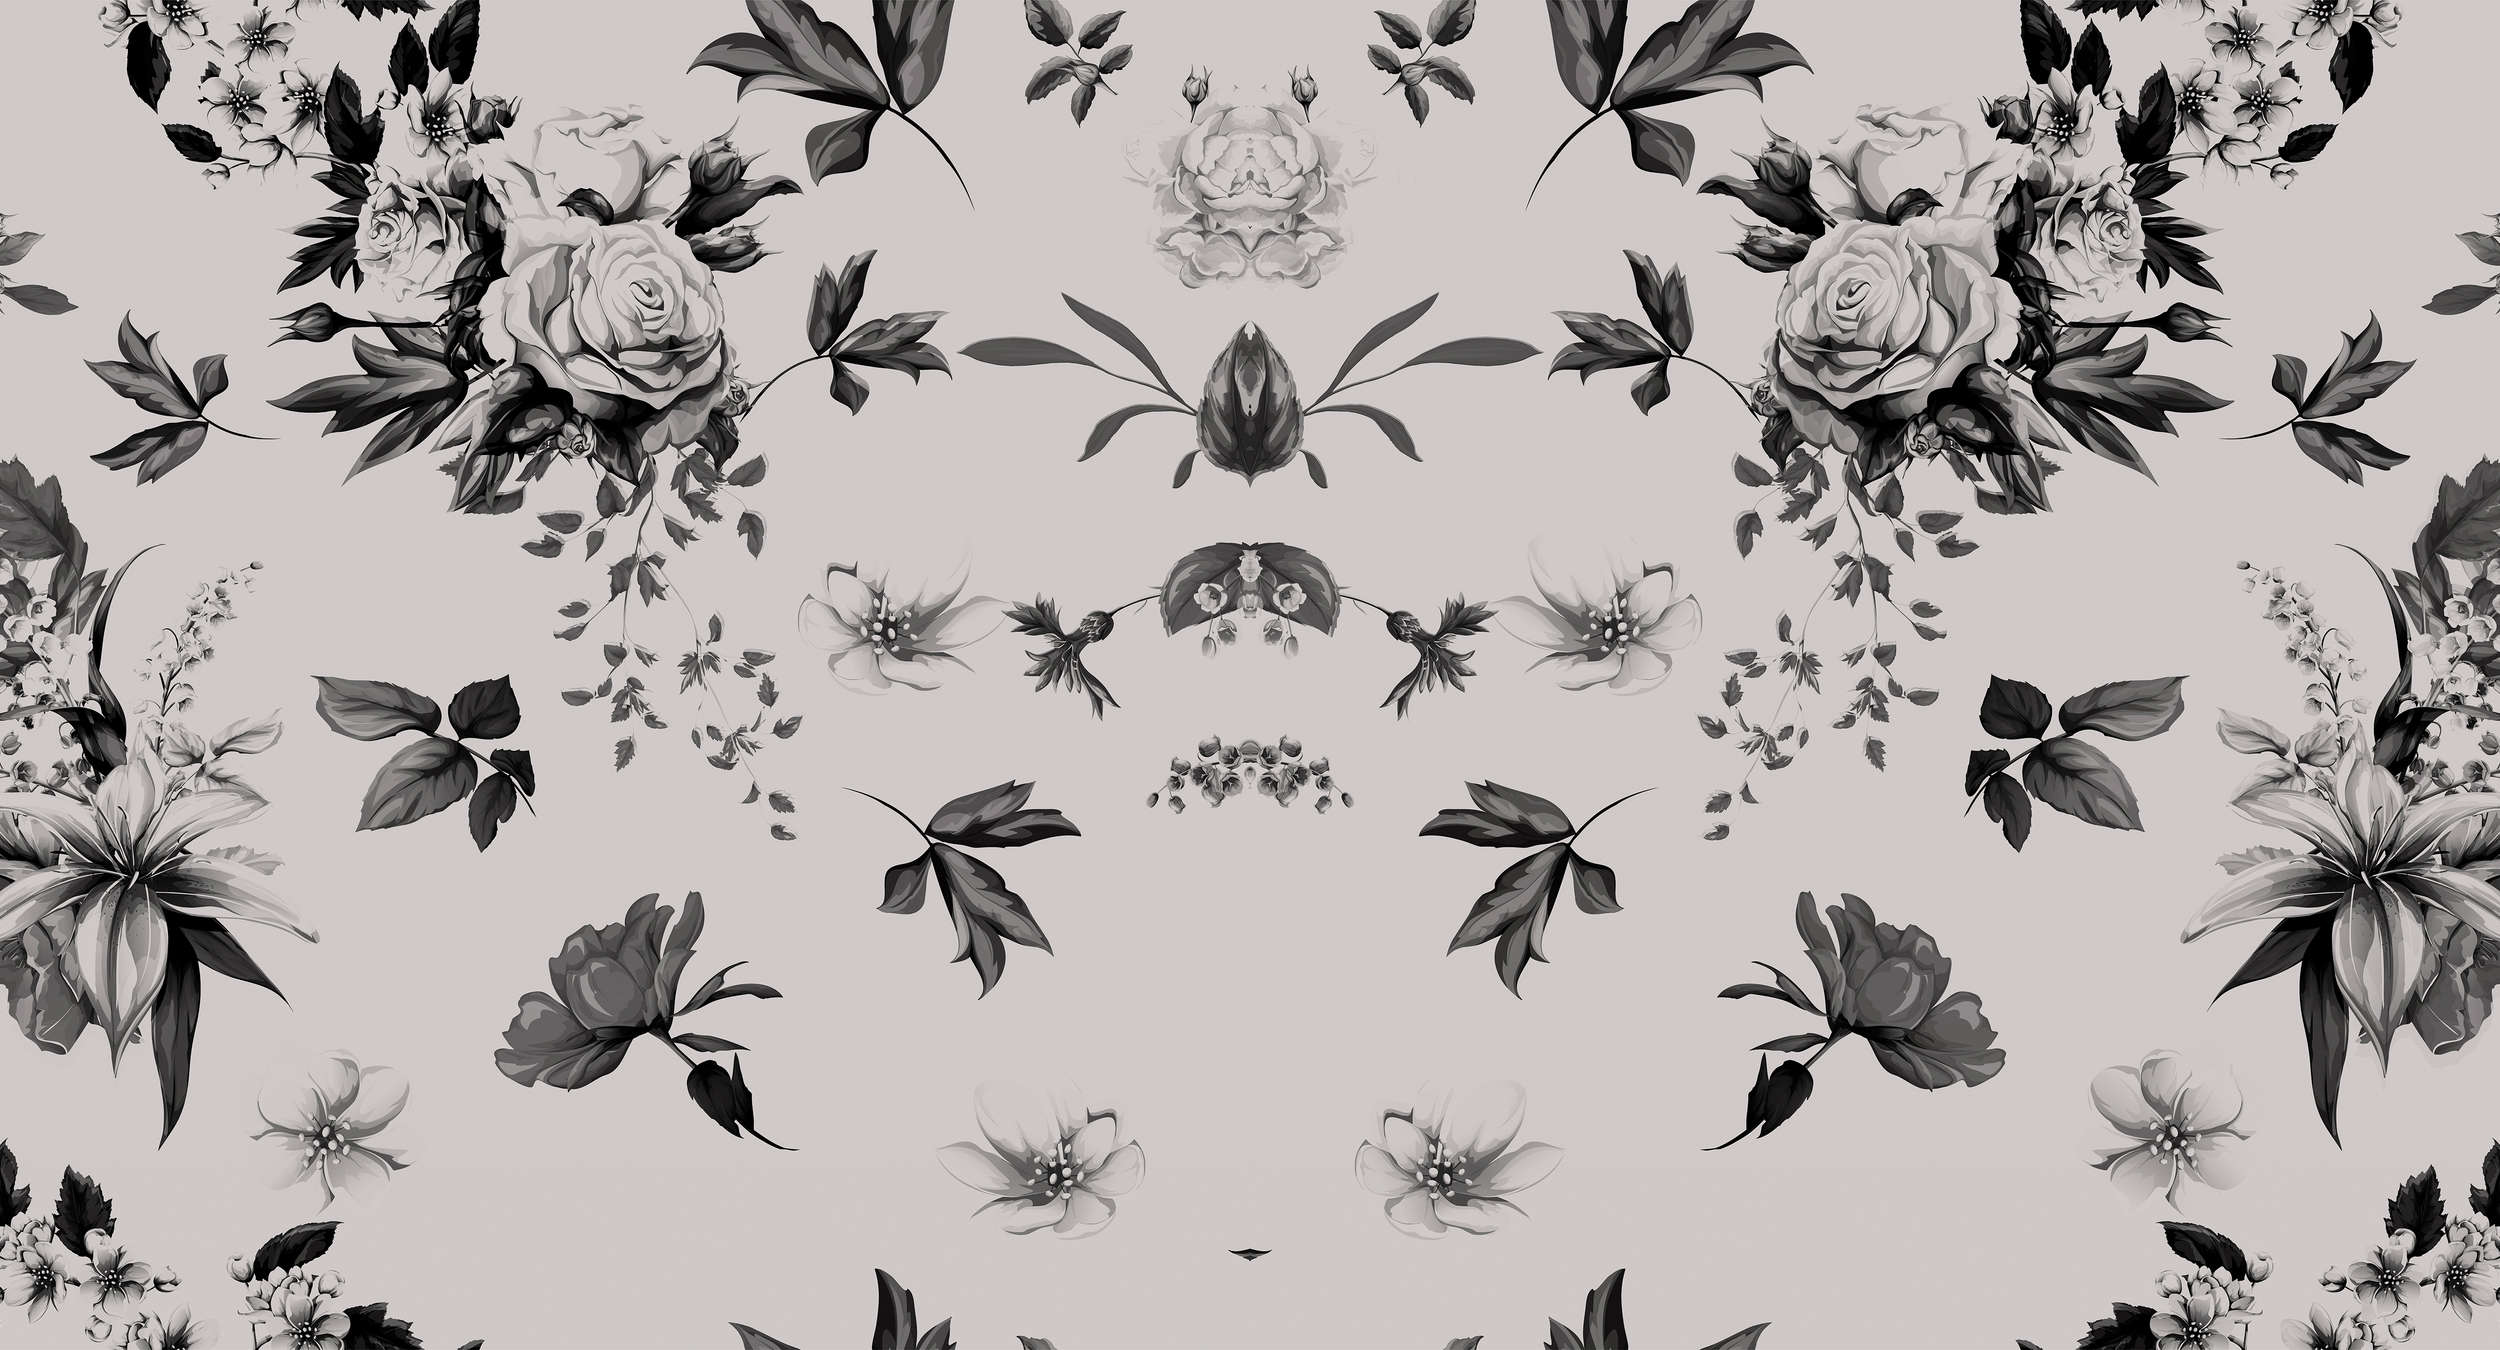             Fotomurali Roses & Flowers Design specchiato - Grigio, nero
        